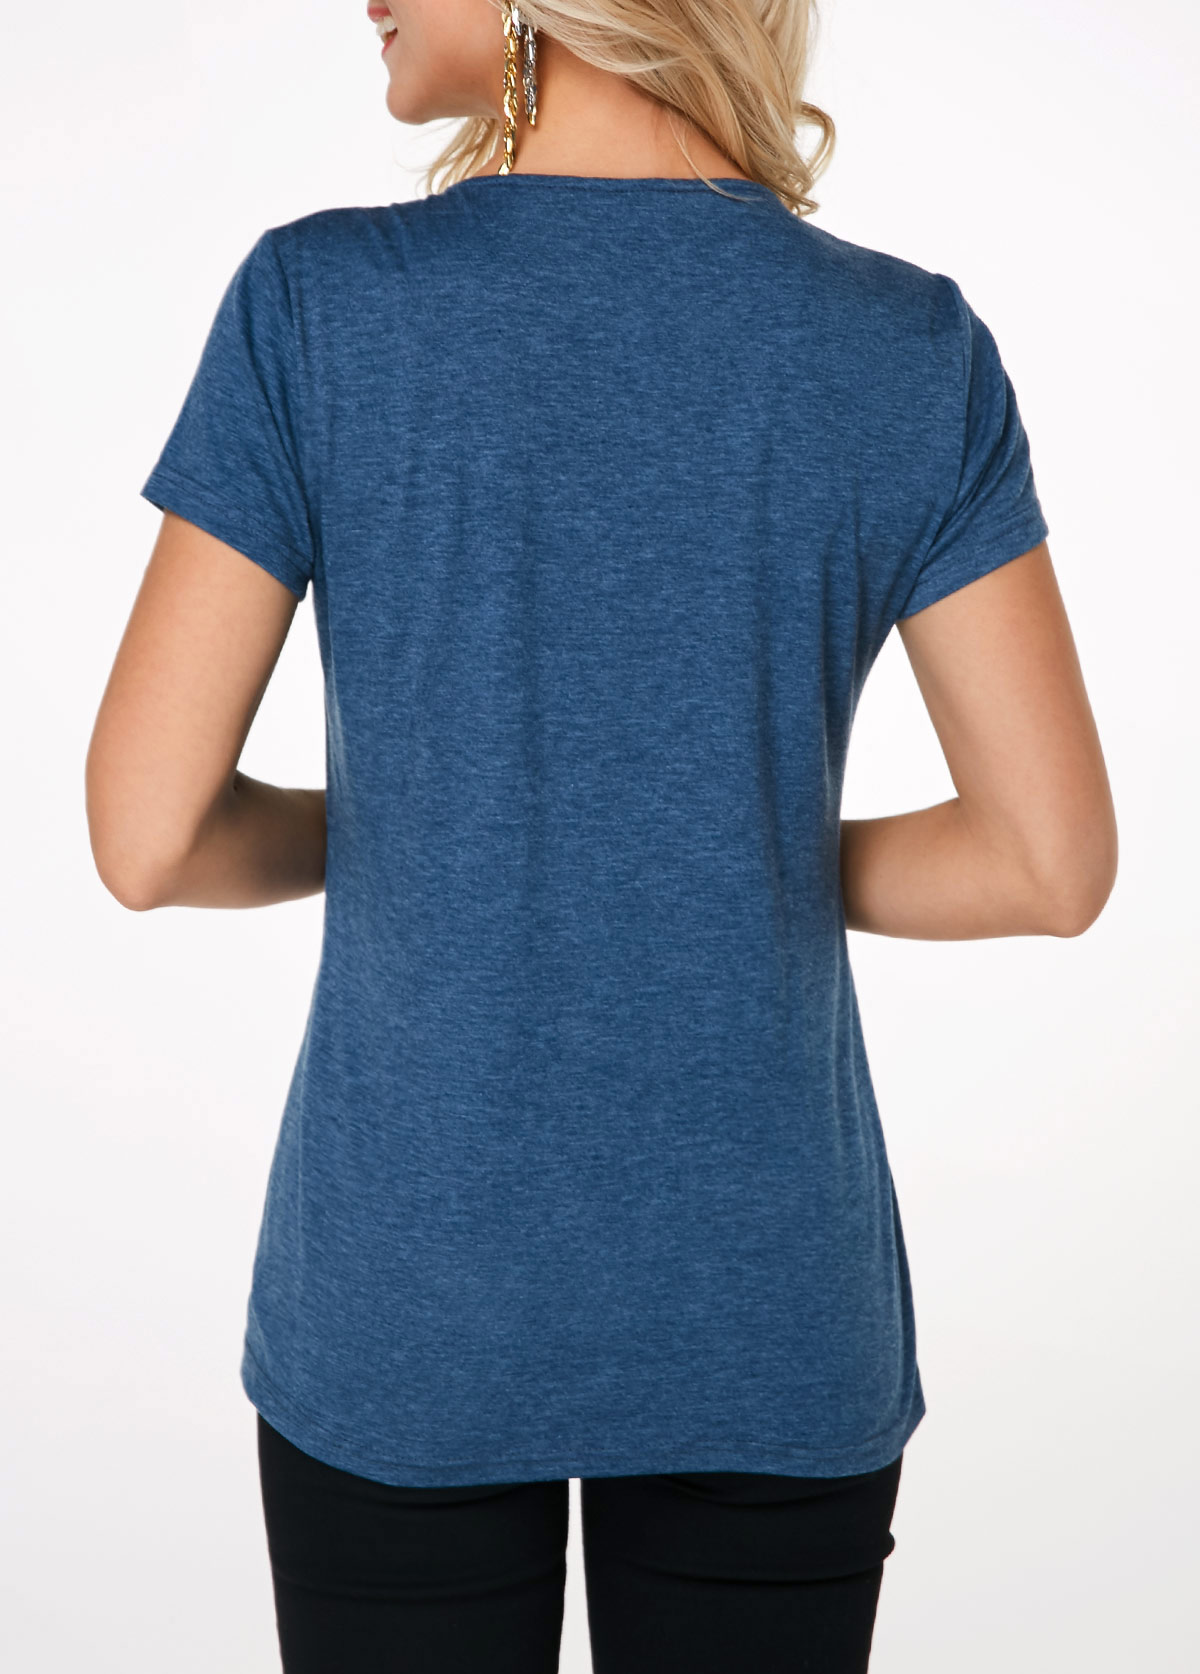 Short Sleeve Crinkle Chest Blue T Shirt